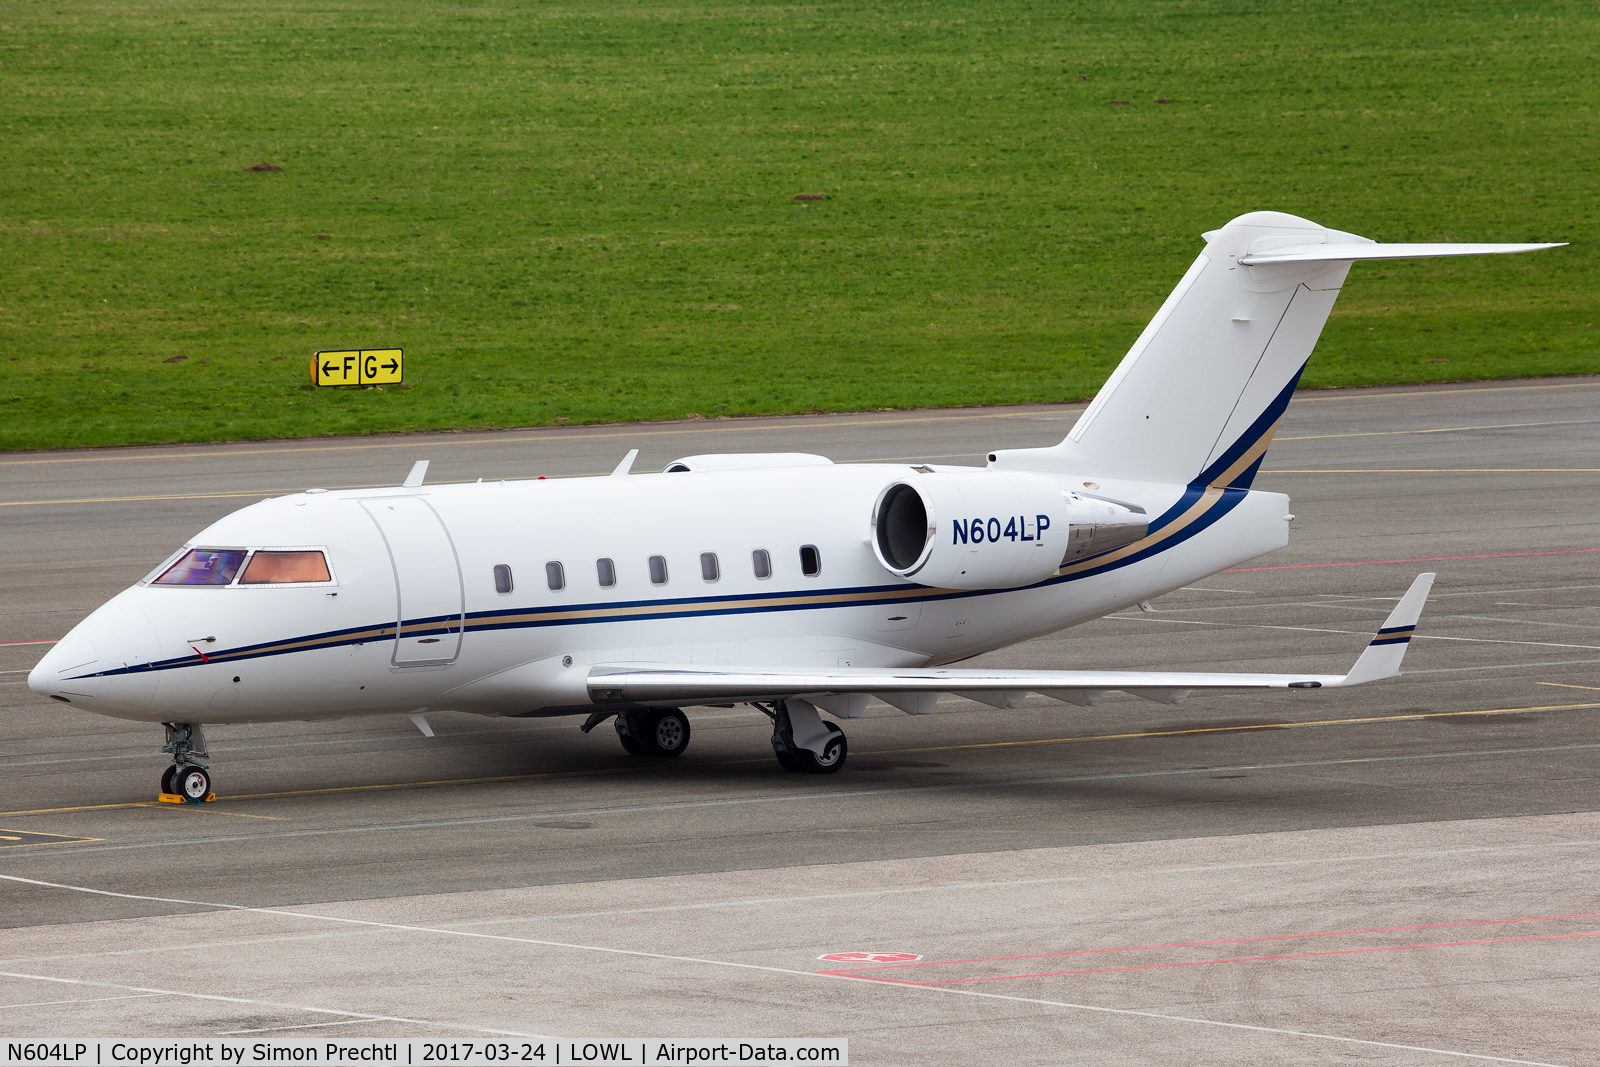 N604LP, 2003 Bombardier Challenger 604 (CL-600-2B16) C/N 5561, N604LP @ Linz Airport